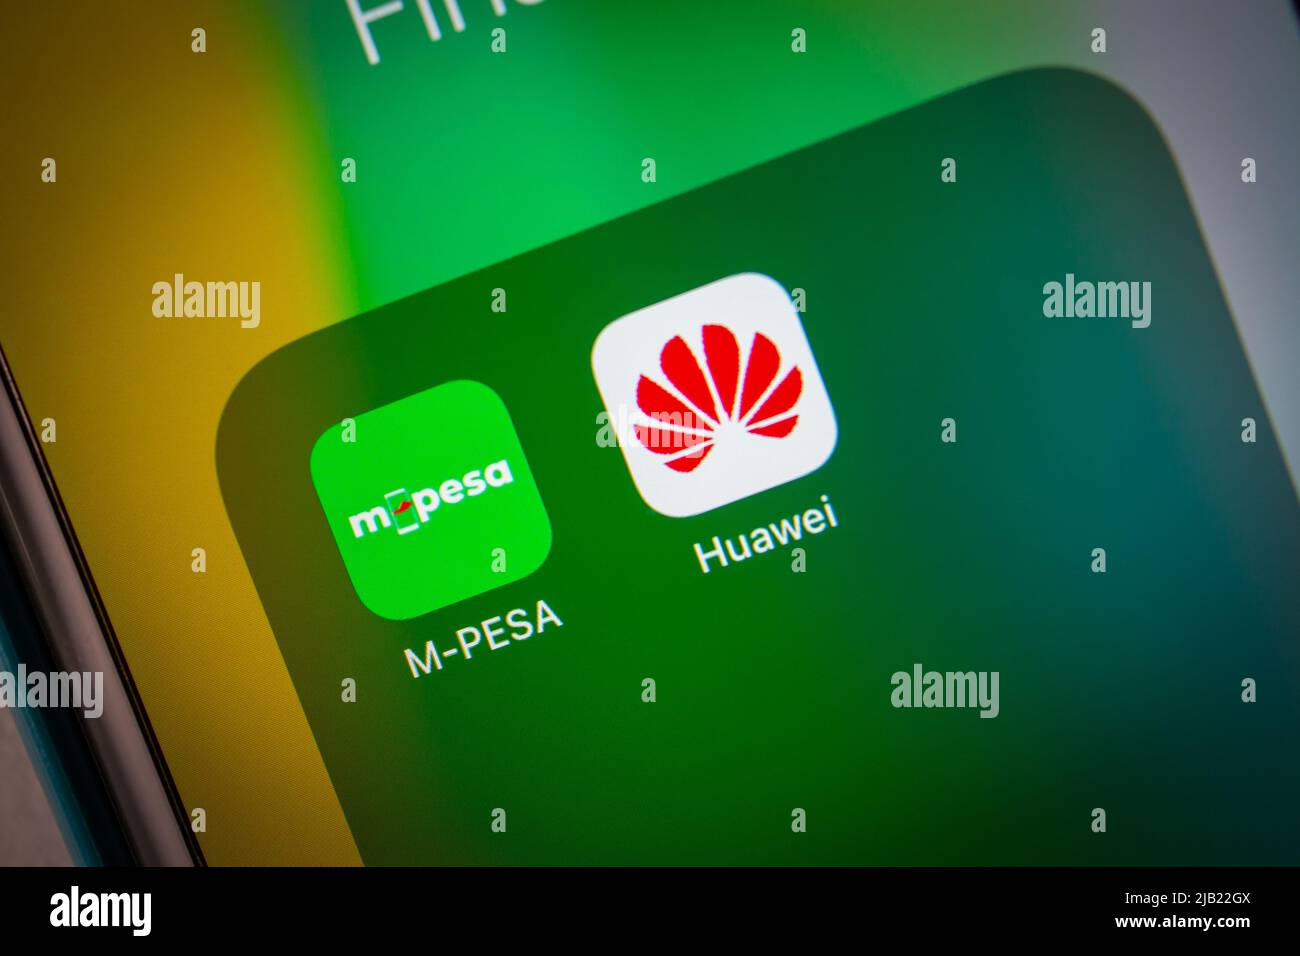 Icônes Mpesa et Huawei sur un iPhone dans l'obscurité. M-Pesa est un service de transfert d'argent et de paiement par téléphone portable de Vodafone et Safaricom Banque D'Images